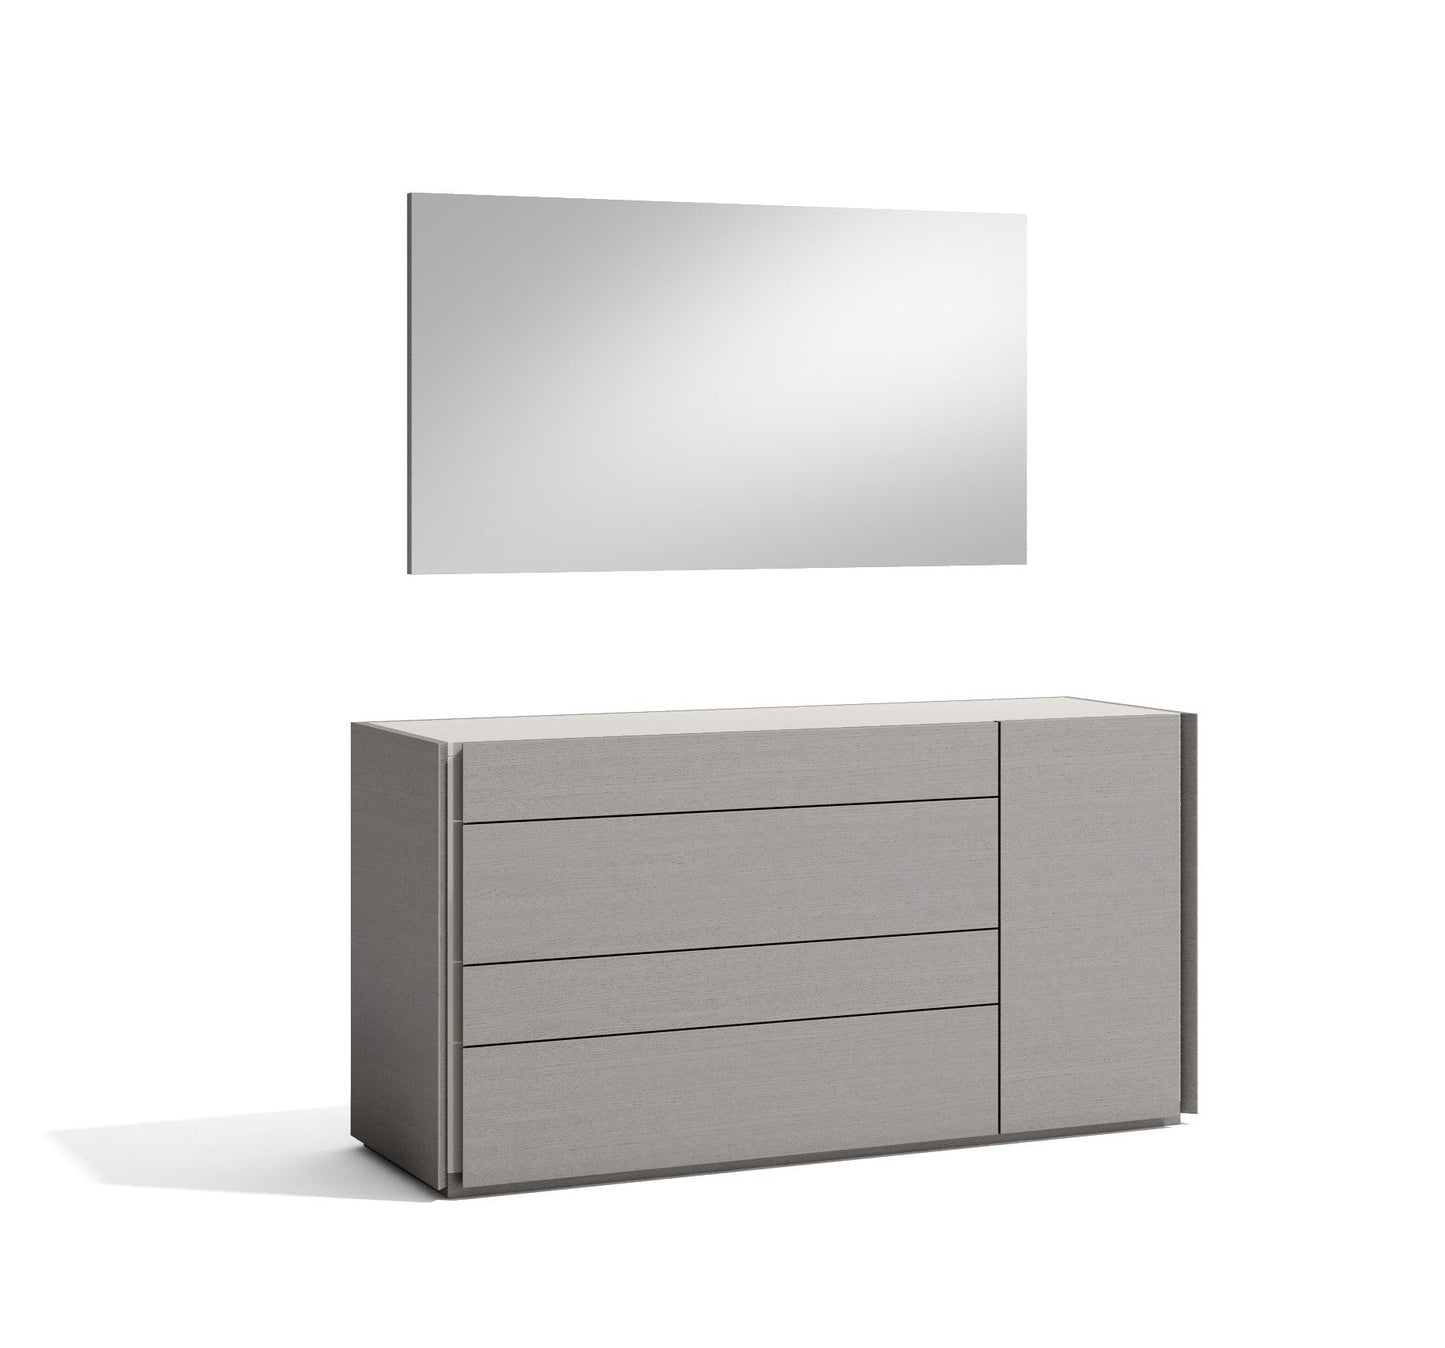 Sintra Premium Bedroom Set in Grey 6 PCS